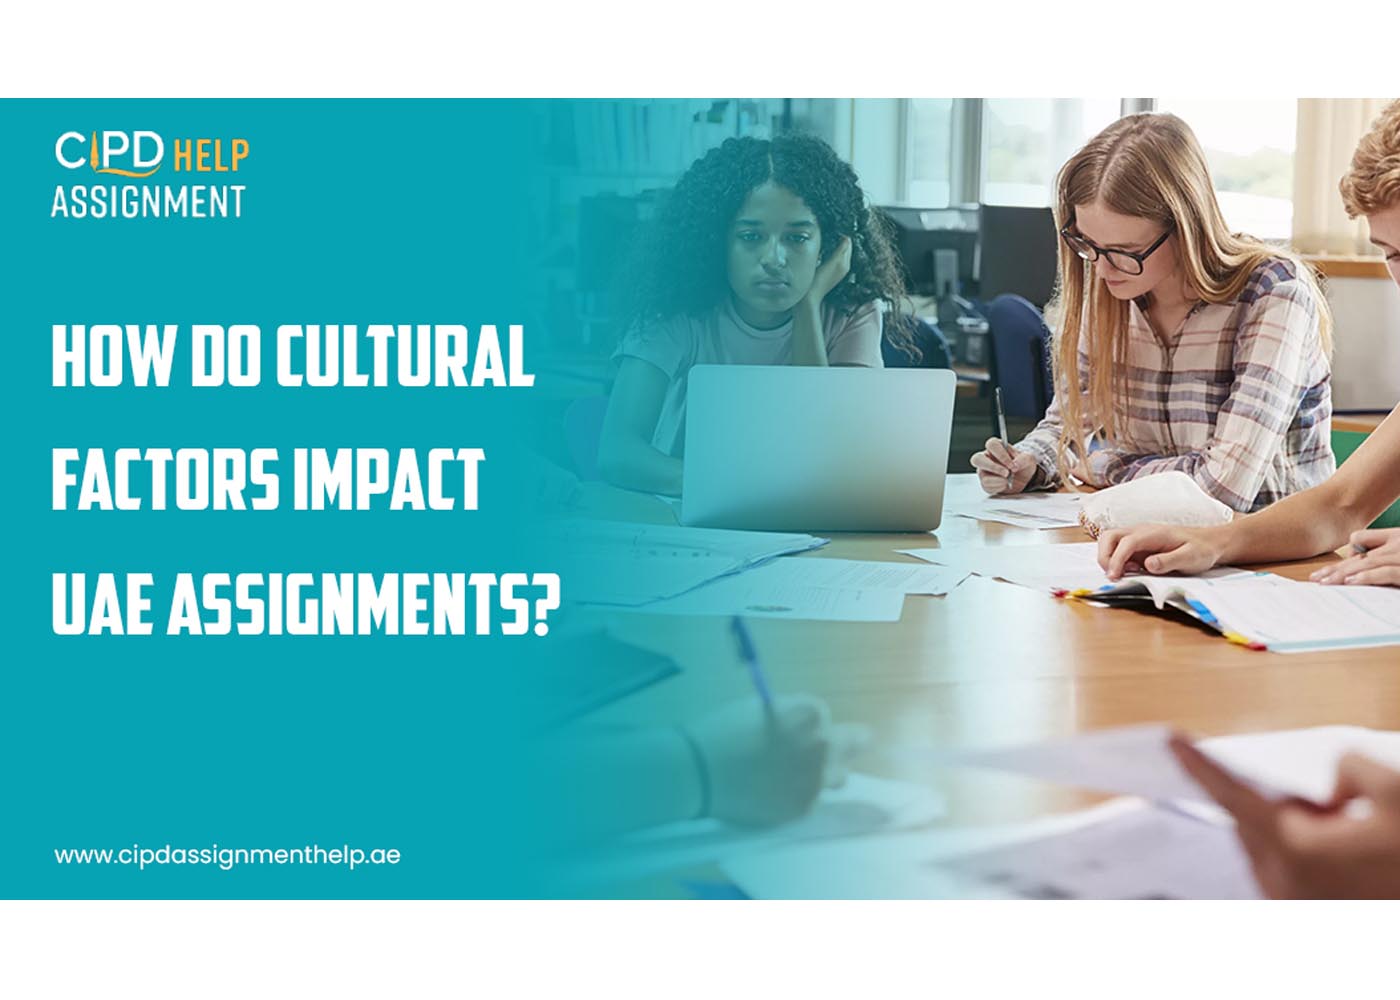 How do cultural factors impact UAE assignments?